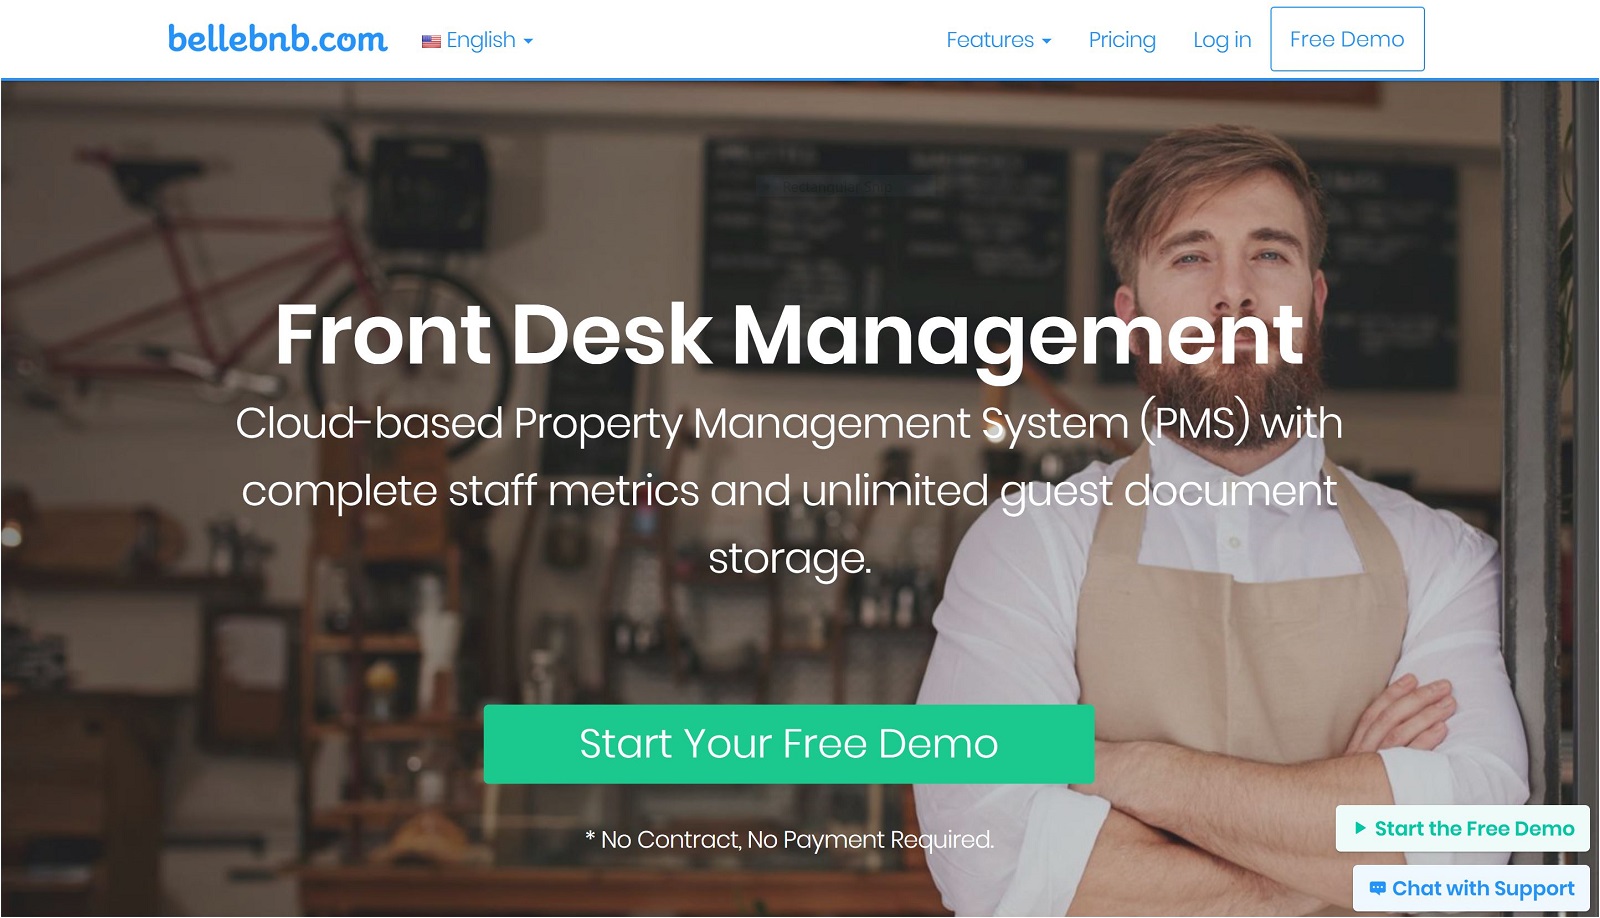 Bellebnb.com Hotel FrontDesk Management Software